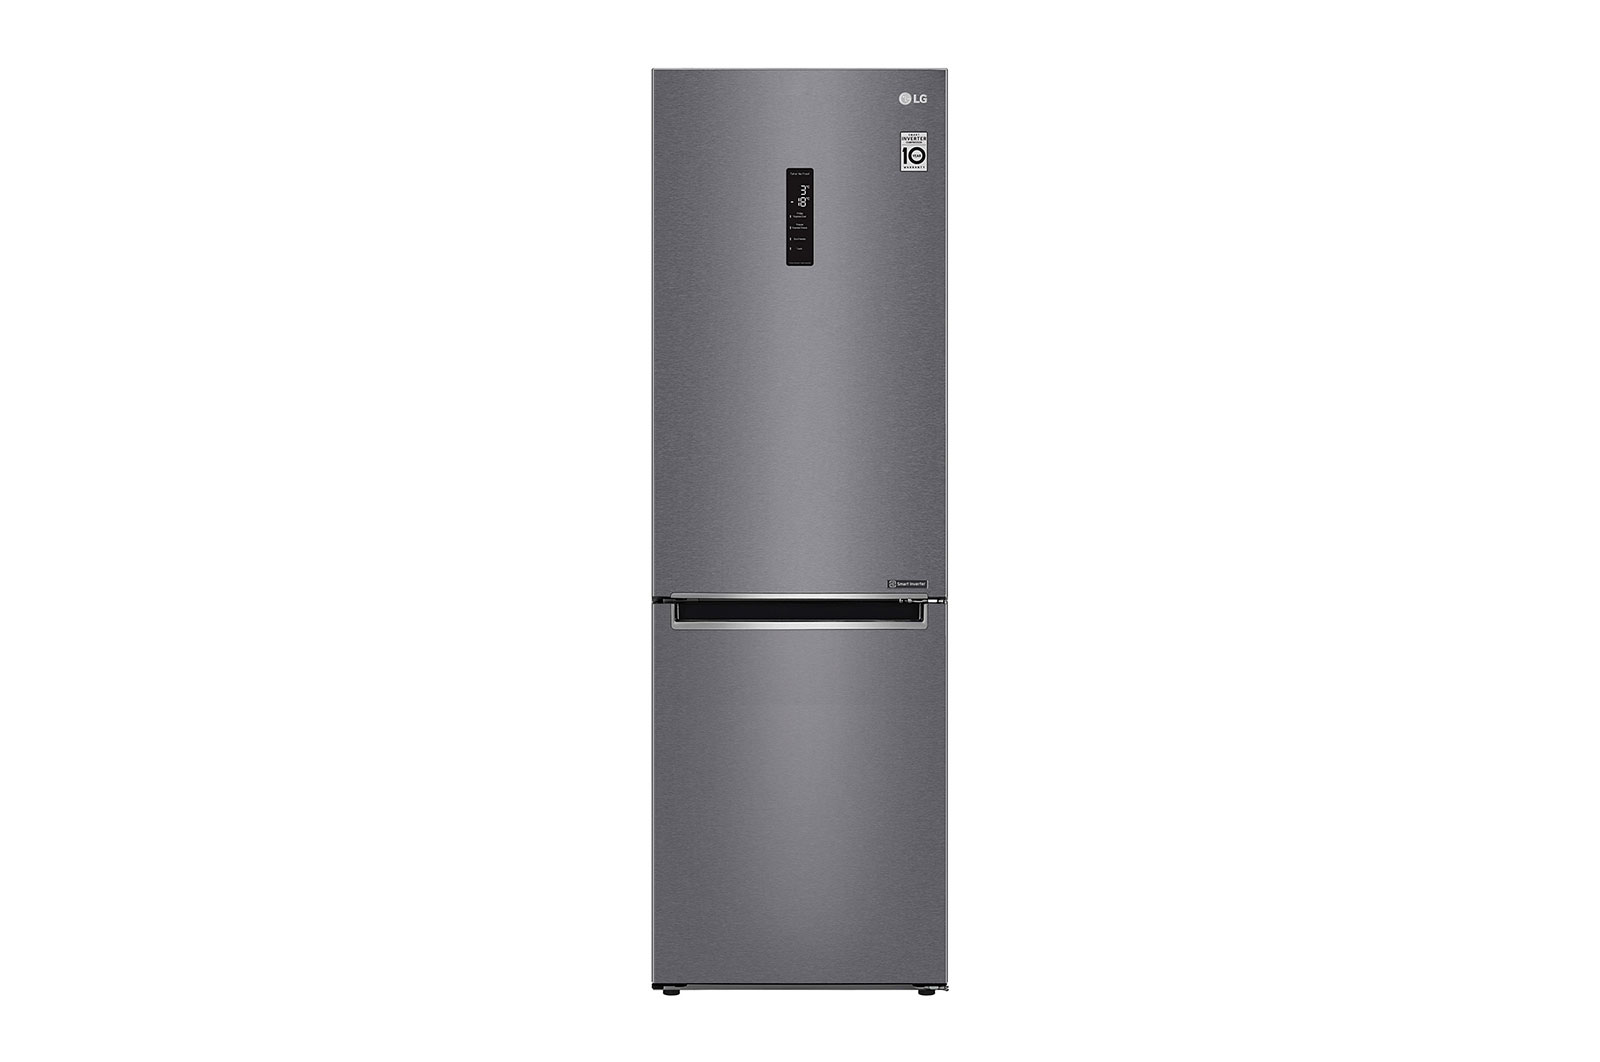 Двухкамерный холодильник LG GA-B509MLSL																		 — описание, фото, цены в интернет-магазине Премьер Техно